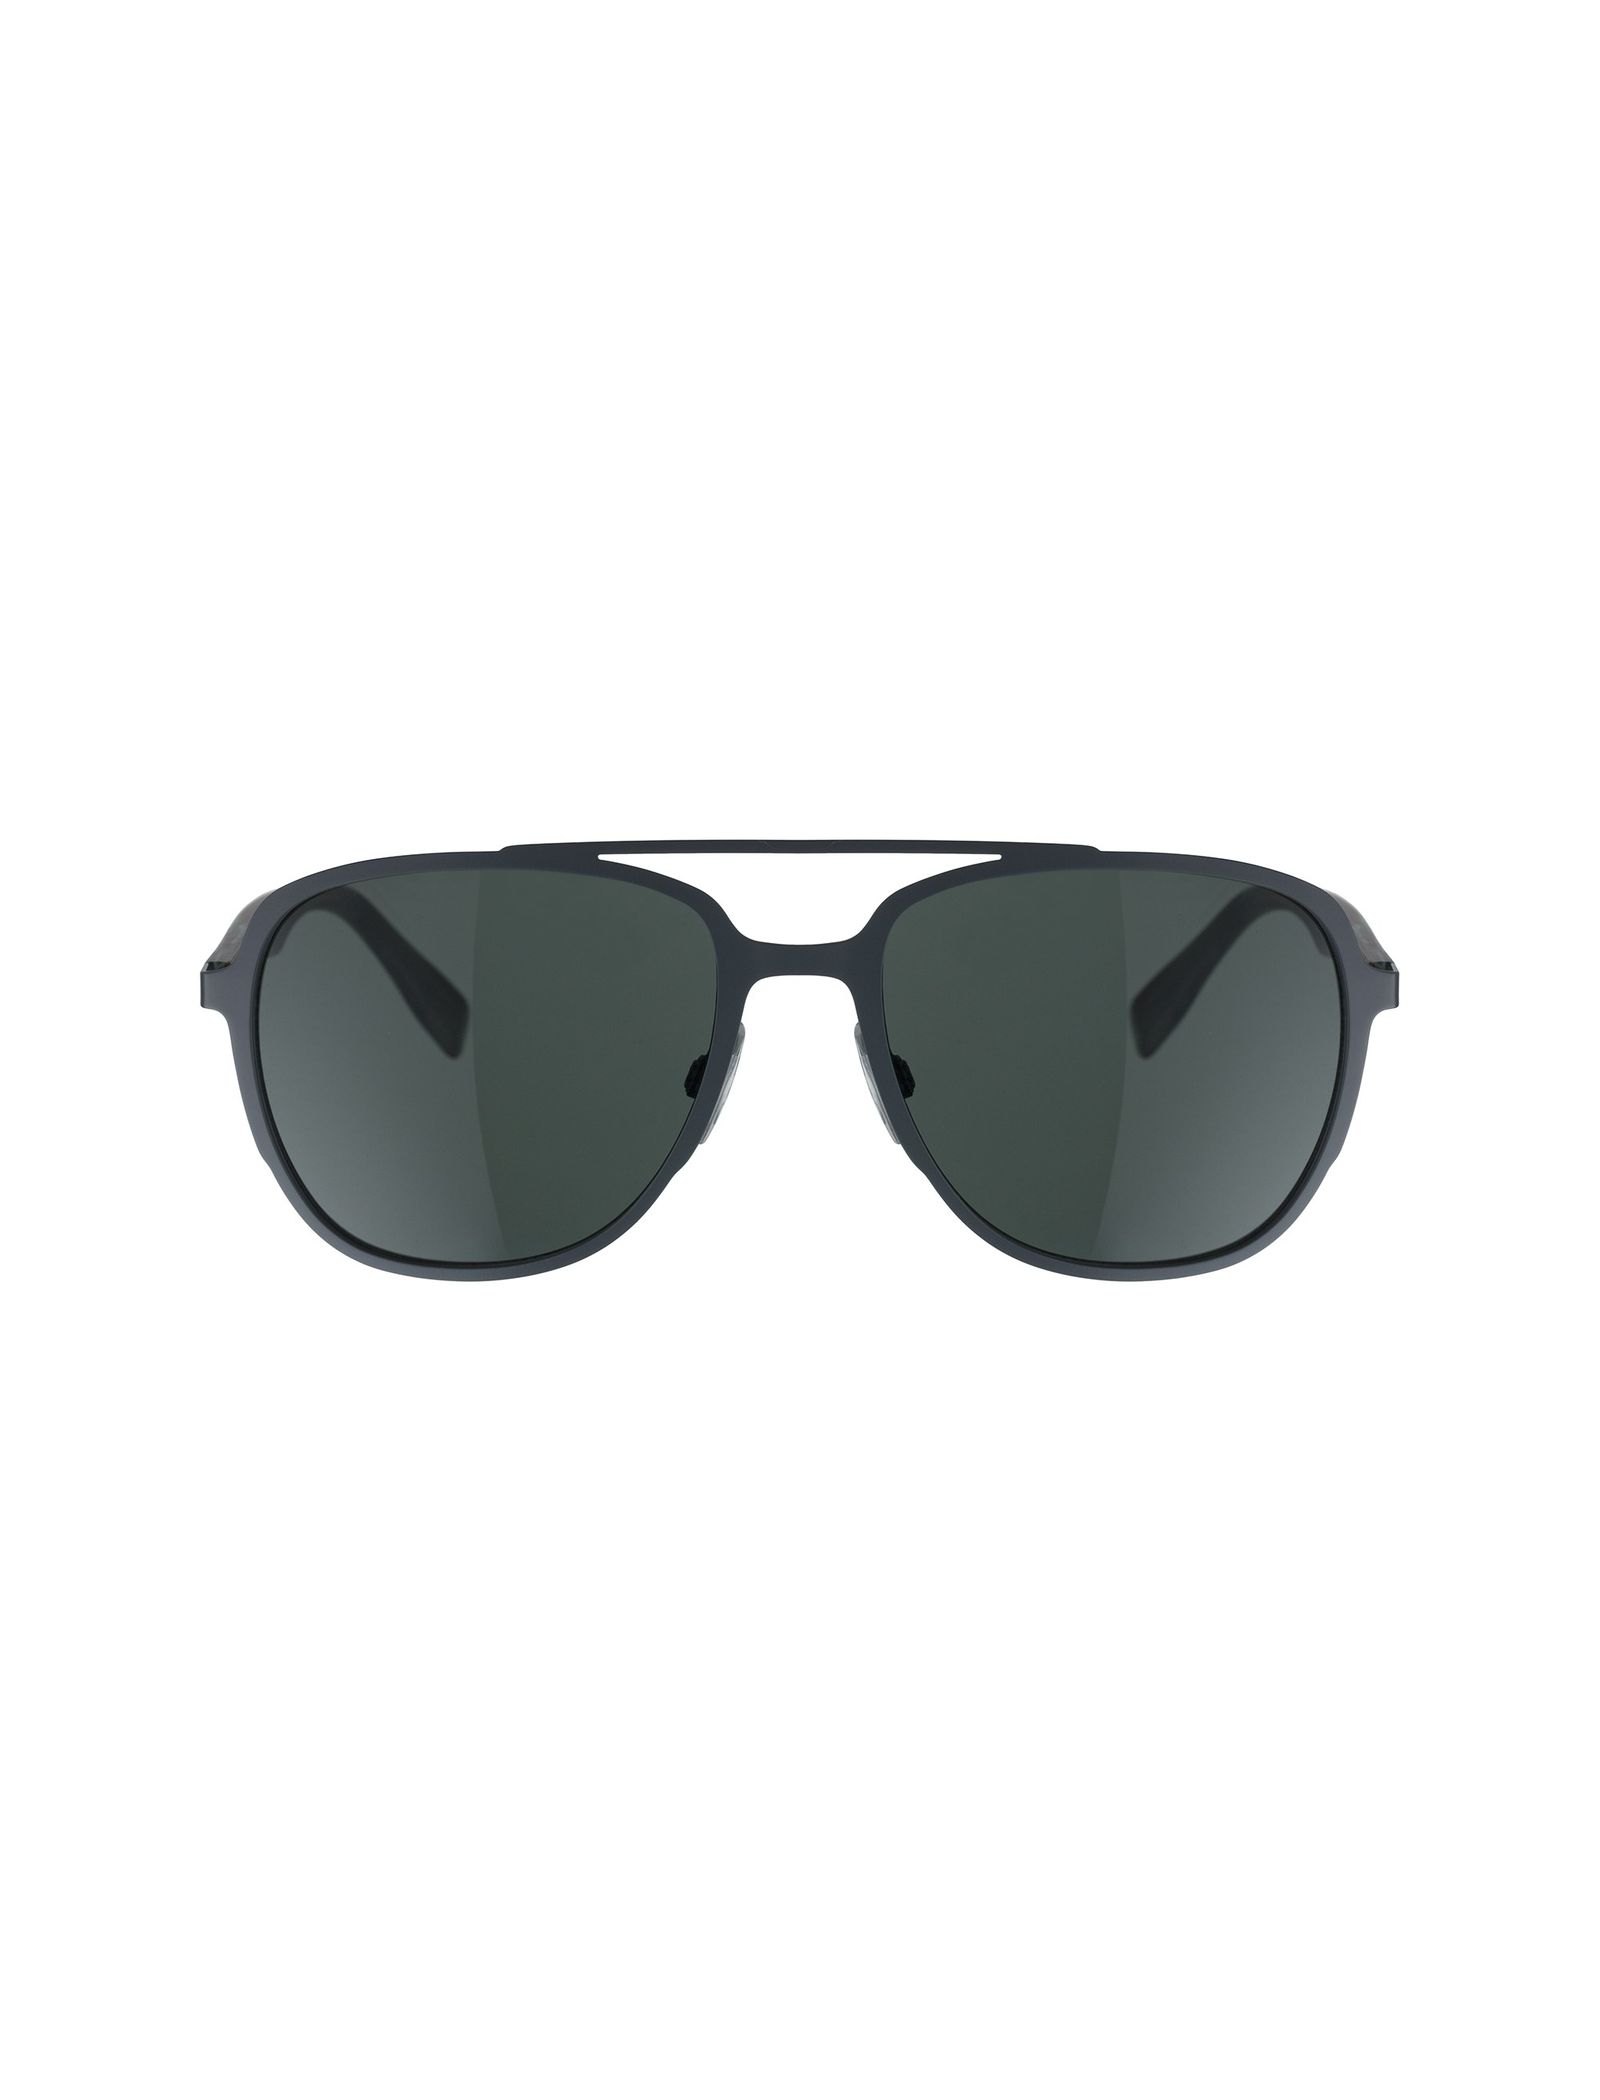 عینک آفتابی خلبانی مردانه - باس اورنج - سبز - 2